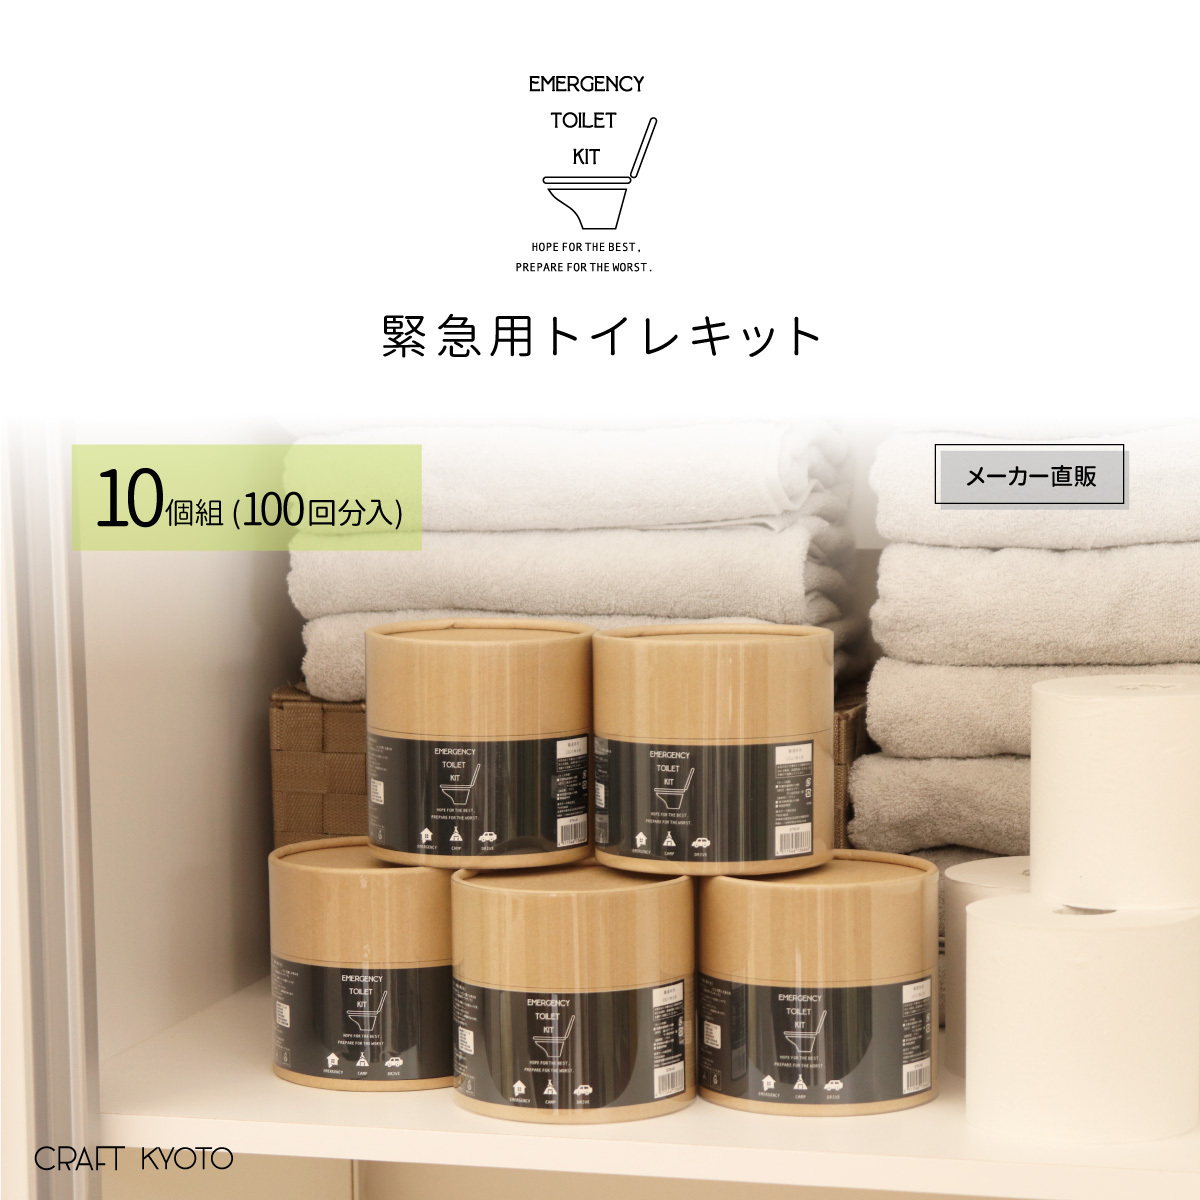 携帯トイレ 緊急用トイレキット 10個組 100回分入 日本製 簡易トイレ 